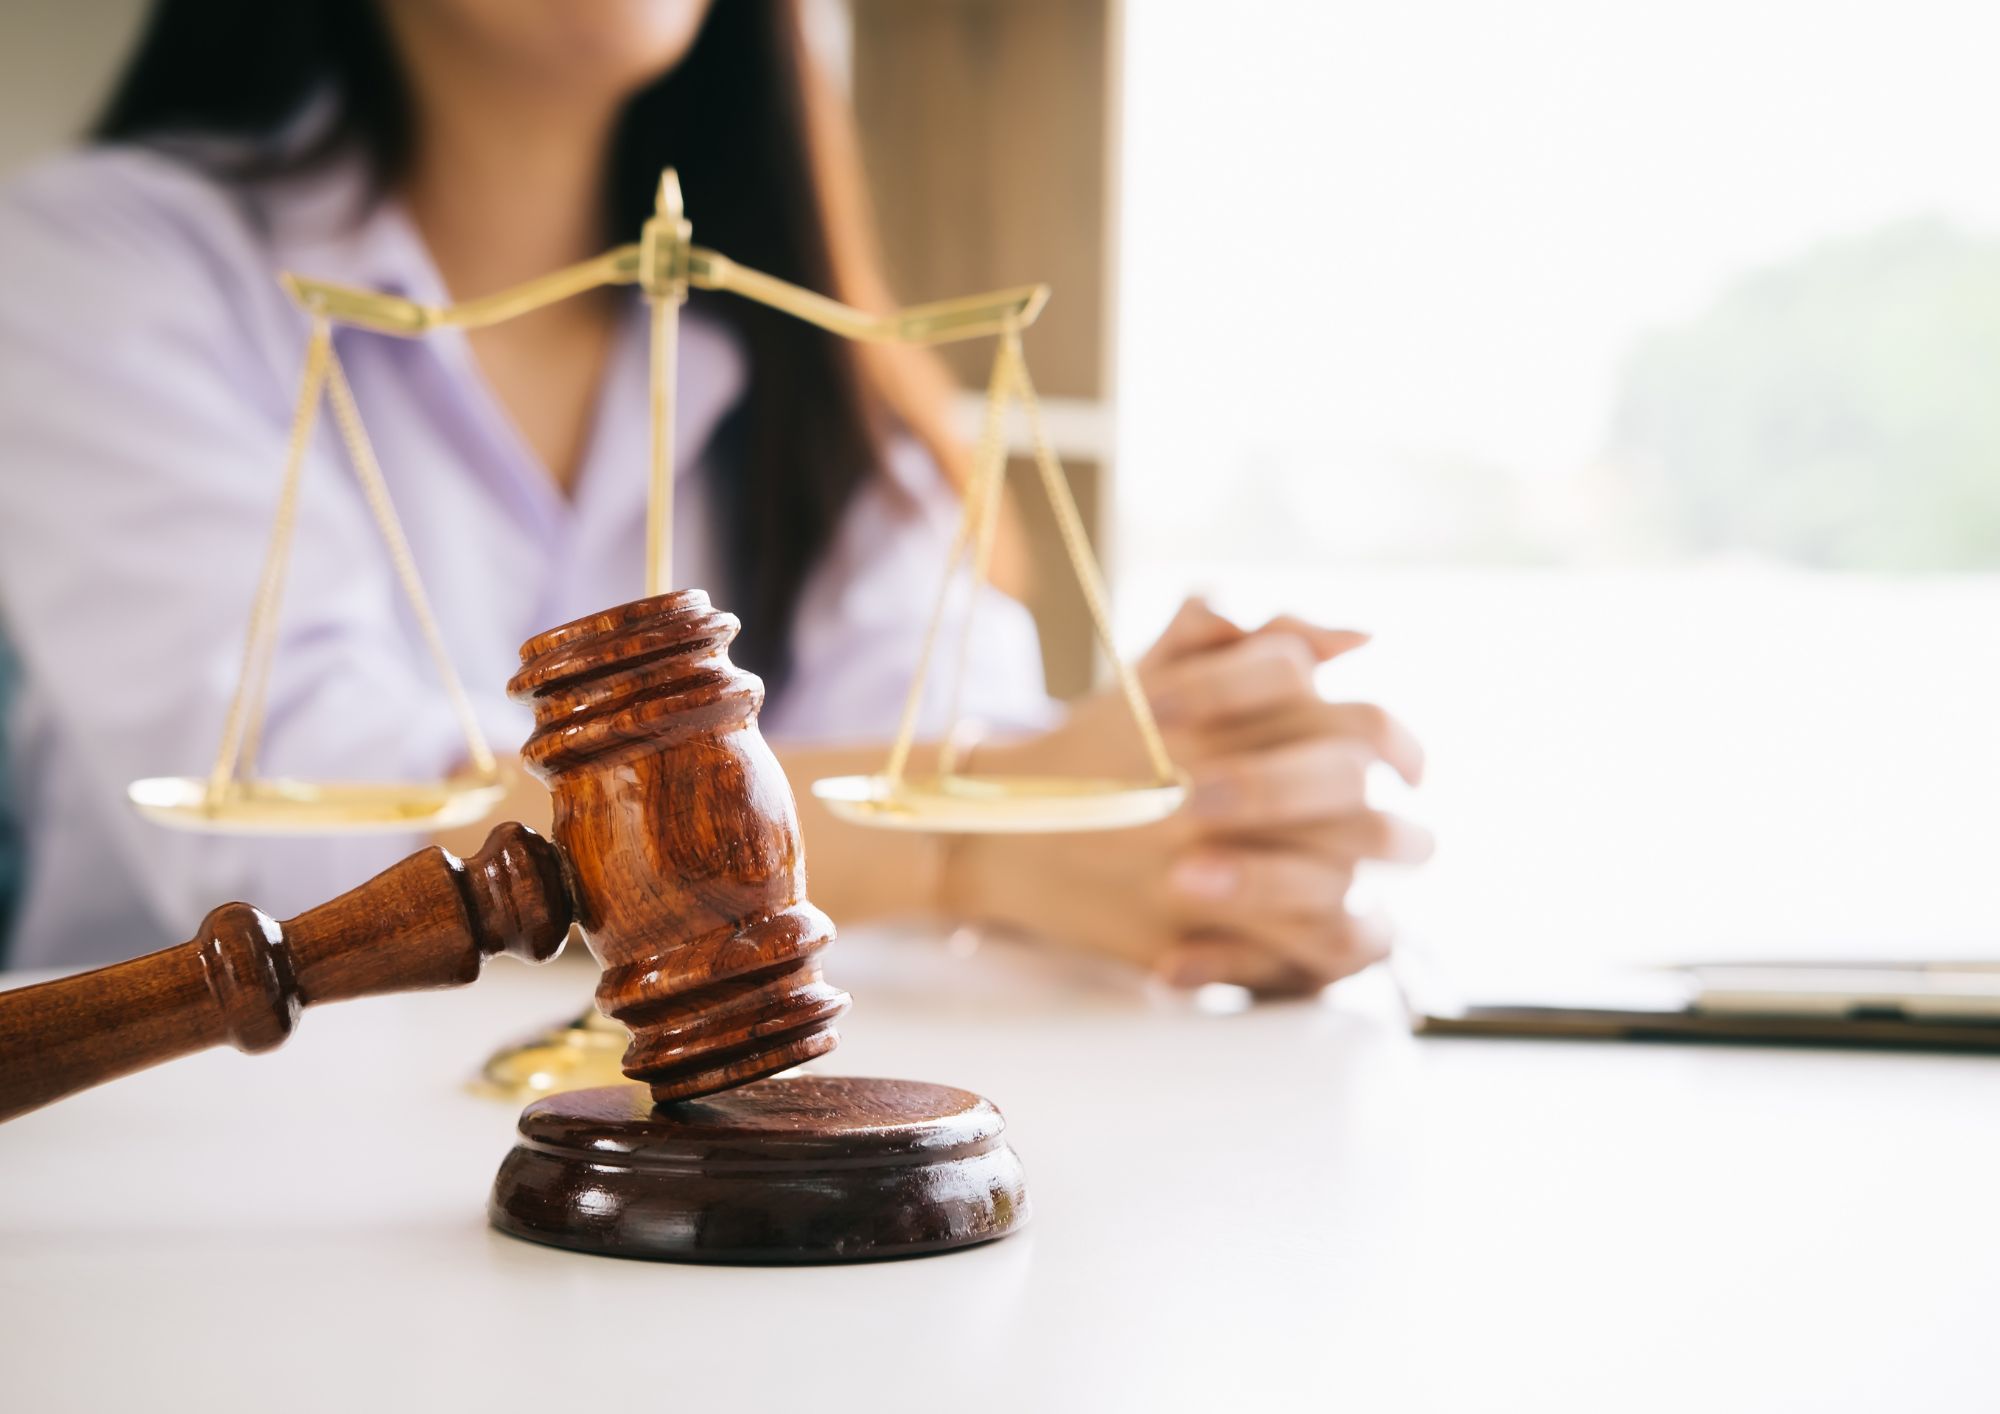 כיצד עורך דין ביטוח לאומי יכול לסייע במימוש הזכויות שלנו?